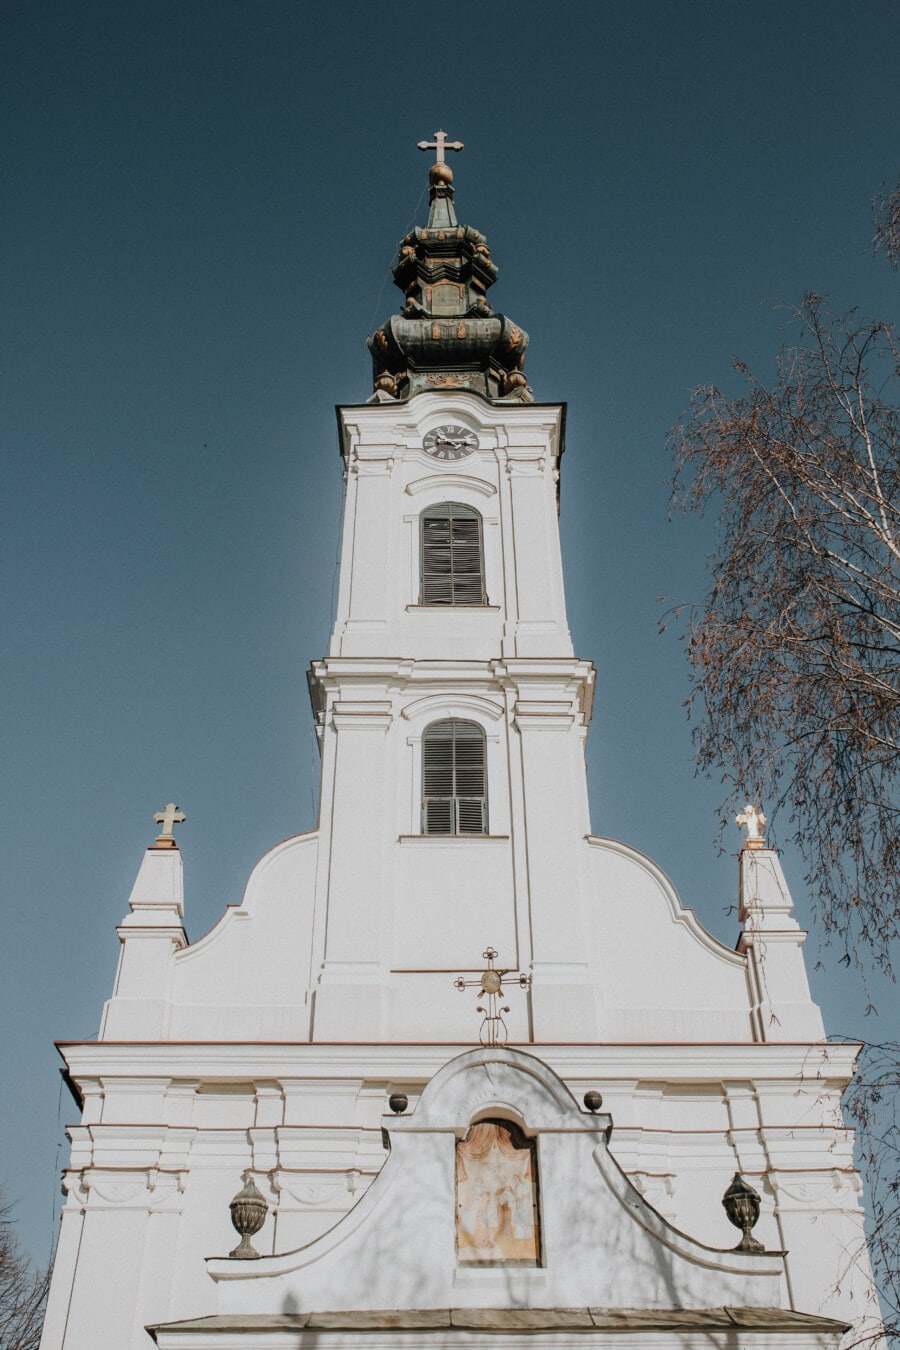 Kirche, Serbien, orthodoxe, weiß, Kirchturm, hoch, vorne, Kreuz, Religion, Gebäude